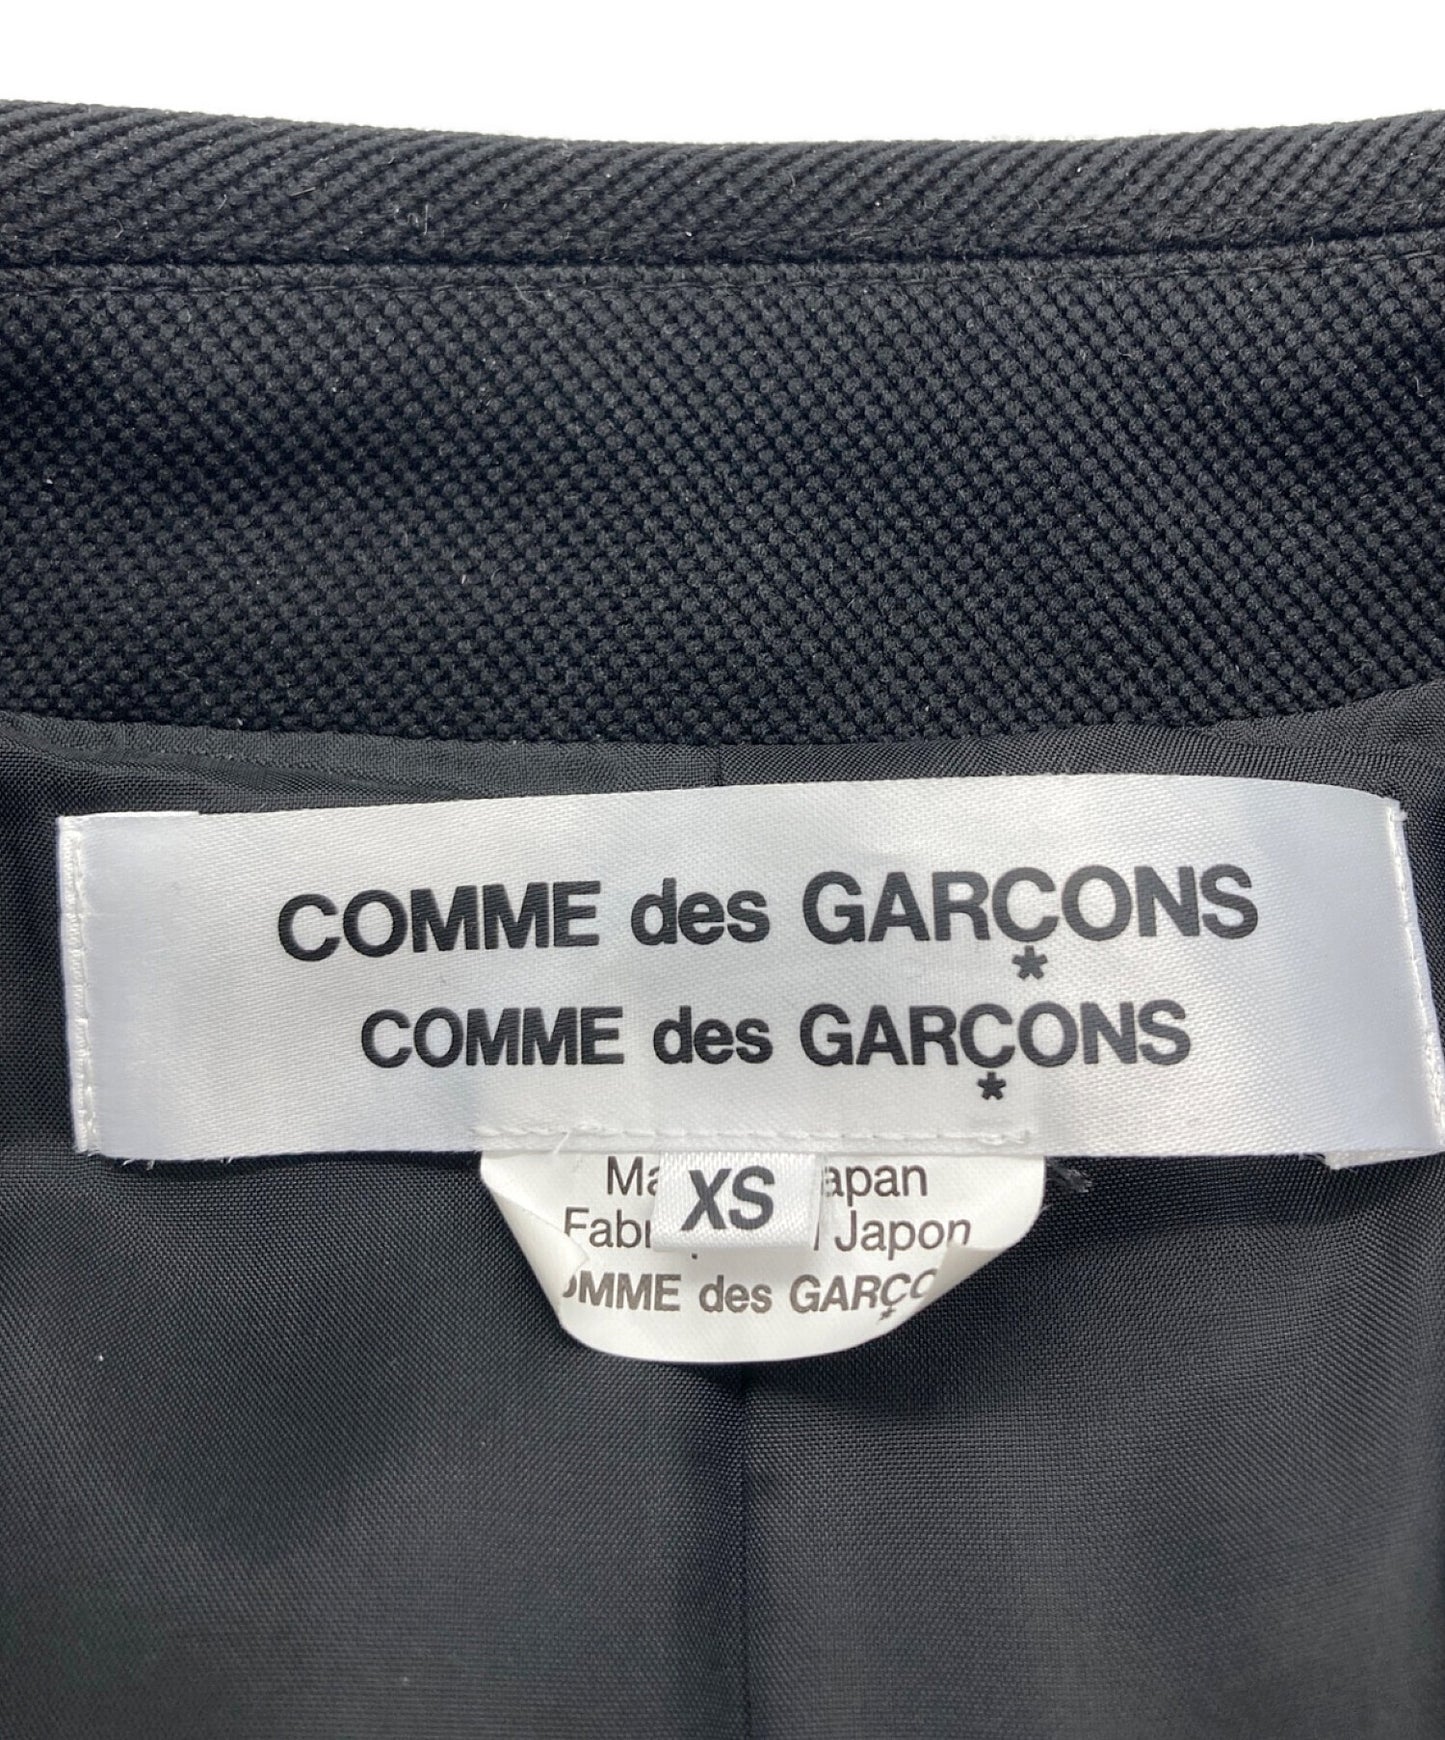 Comme des Garcons Comme des Garcons 사이드 슬릿 벨트 코트 RH-C002